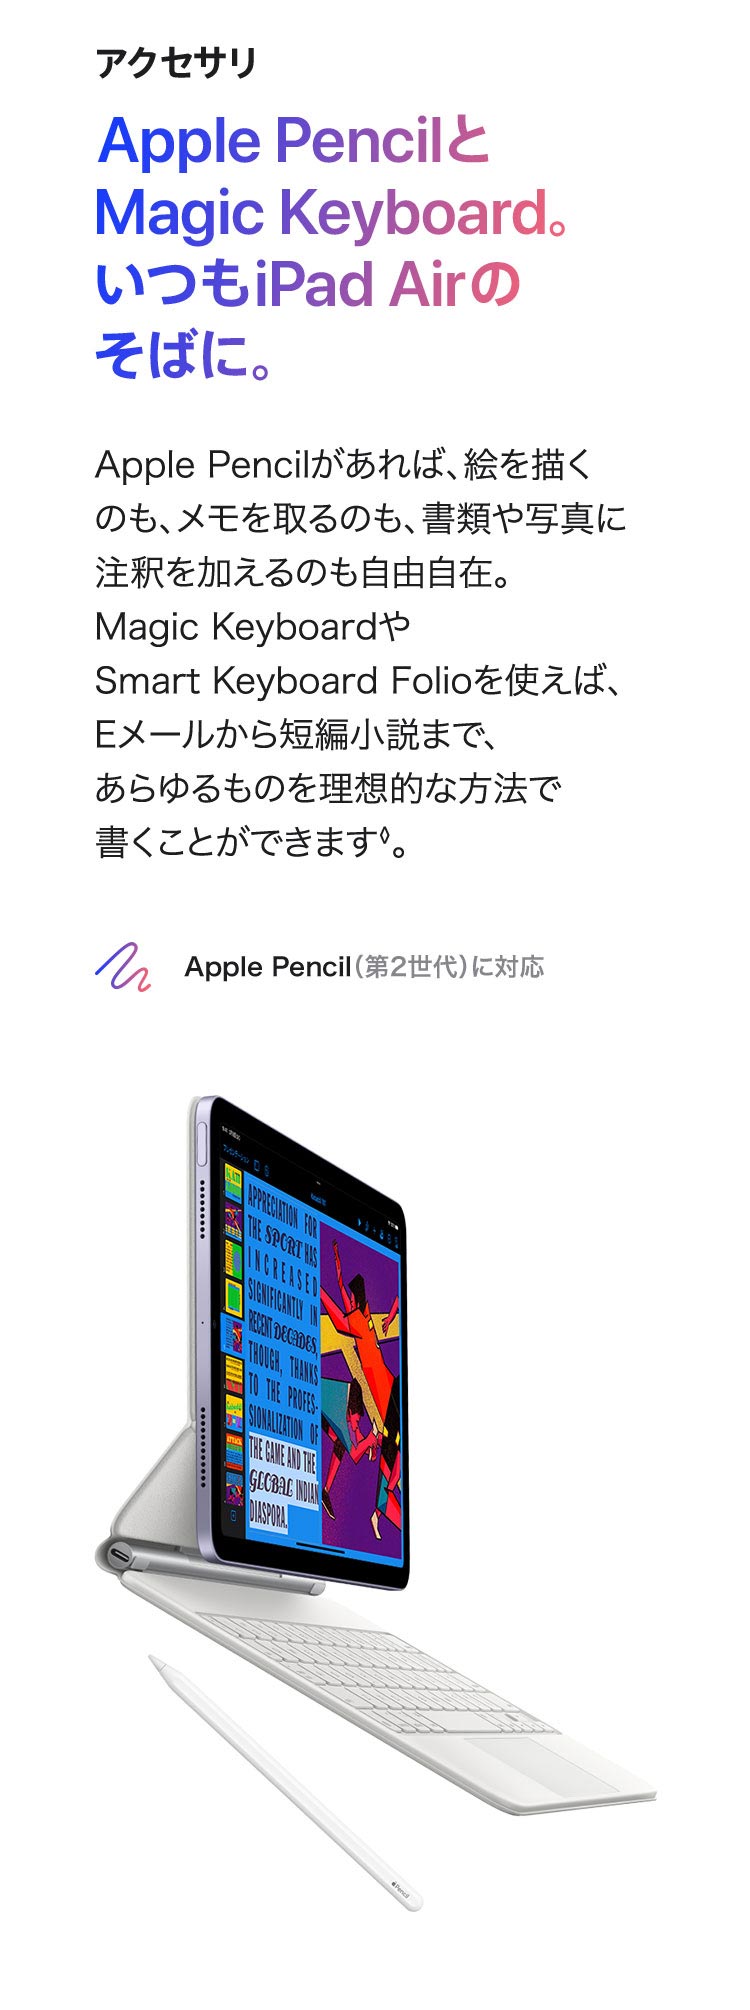 アクセサリ  Apple PencilとMagic Keyboard。いつもiPad Airのそばに。 Apple Pencilがあれば、絵を描くのも、メモを取るのも、 書類や写真に注釈を加えるのも自由自在。 Magic KeyboardやSmart Keyboard Folioを使えば、 Eメールから短編小説まで、あらゆるものを理想的な方法で 書くことができます◊。